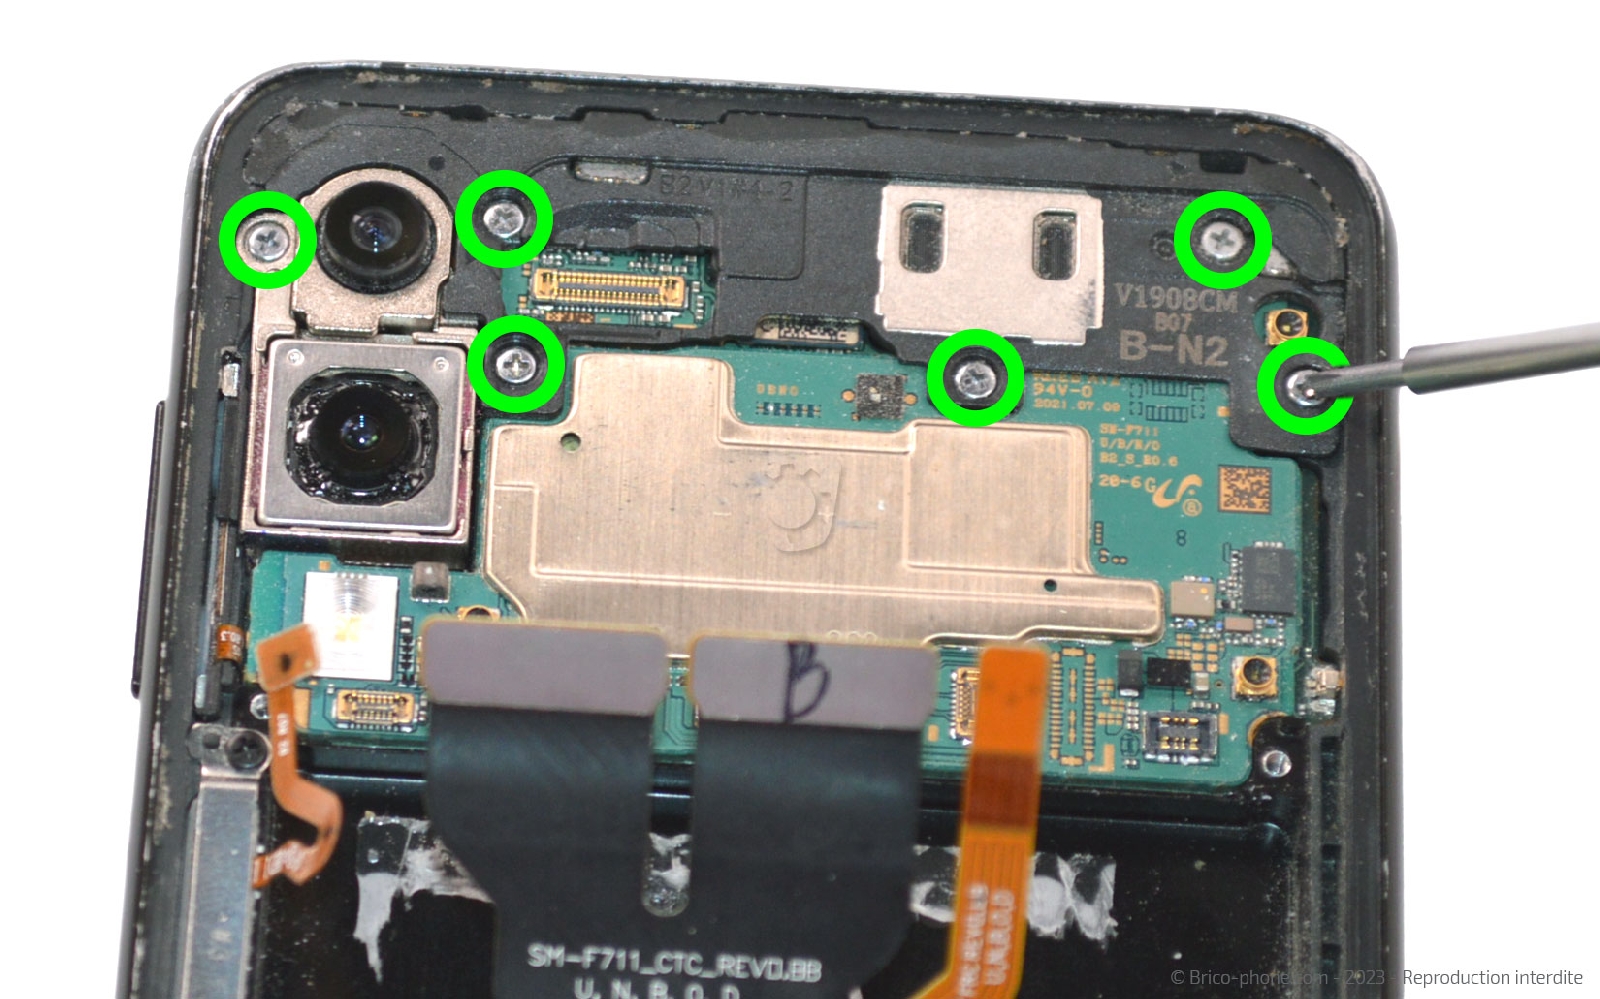 Acheter pour réparer Ecran tactile + LCD noir de remplacement pour Samsung  Galaxy Tab A 2019 10.1 (SM-T510 / SM-T515) [ Trouble Clic ]